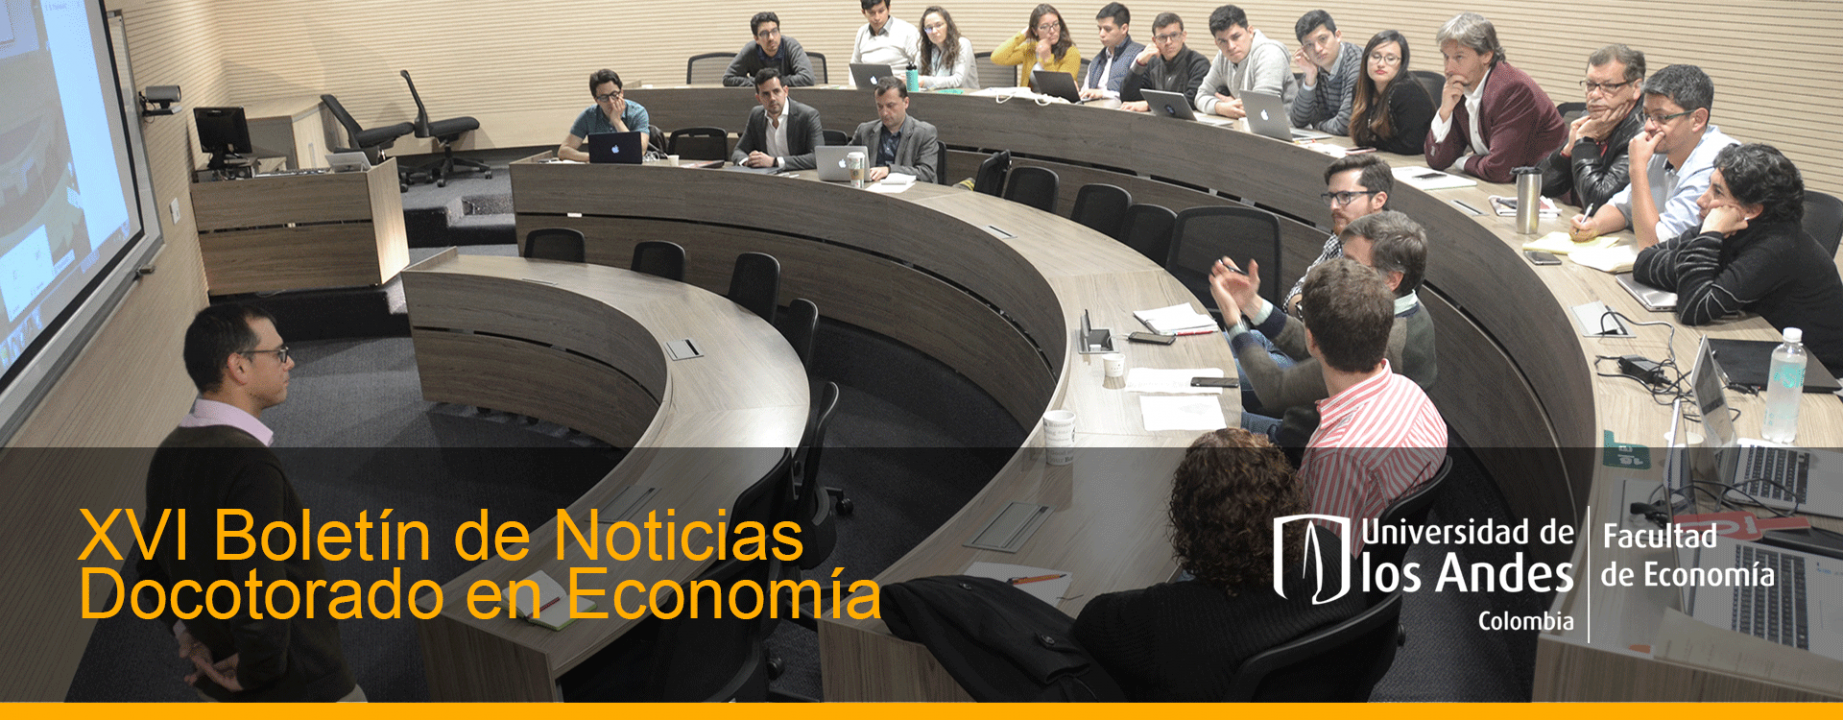 Boletón doctorado, facultad de economía, universidad de los Andes